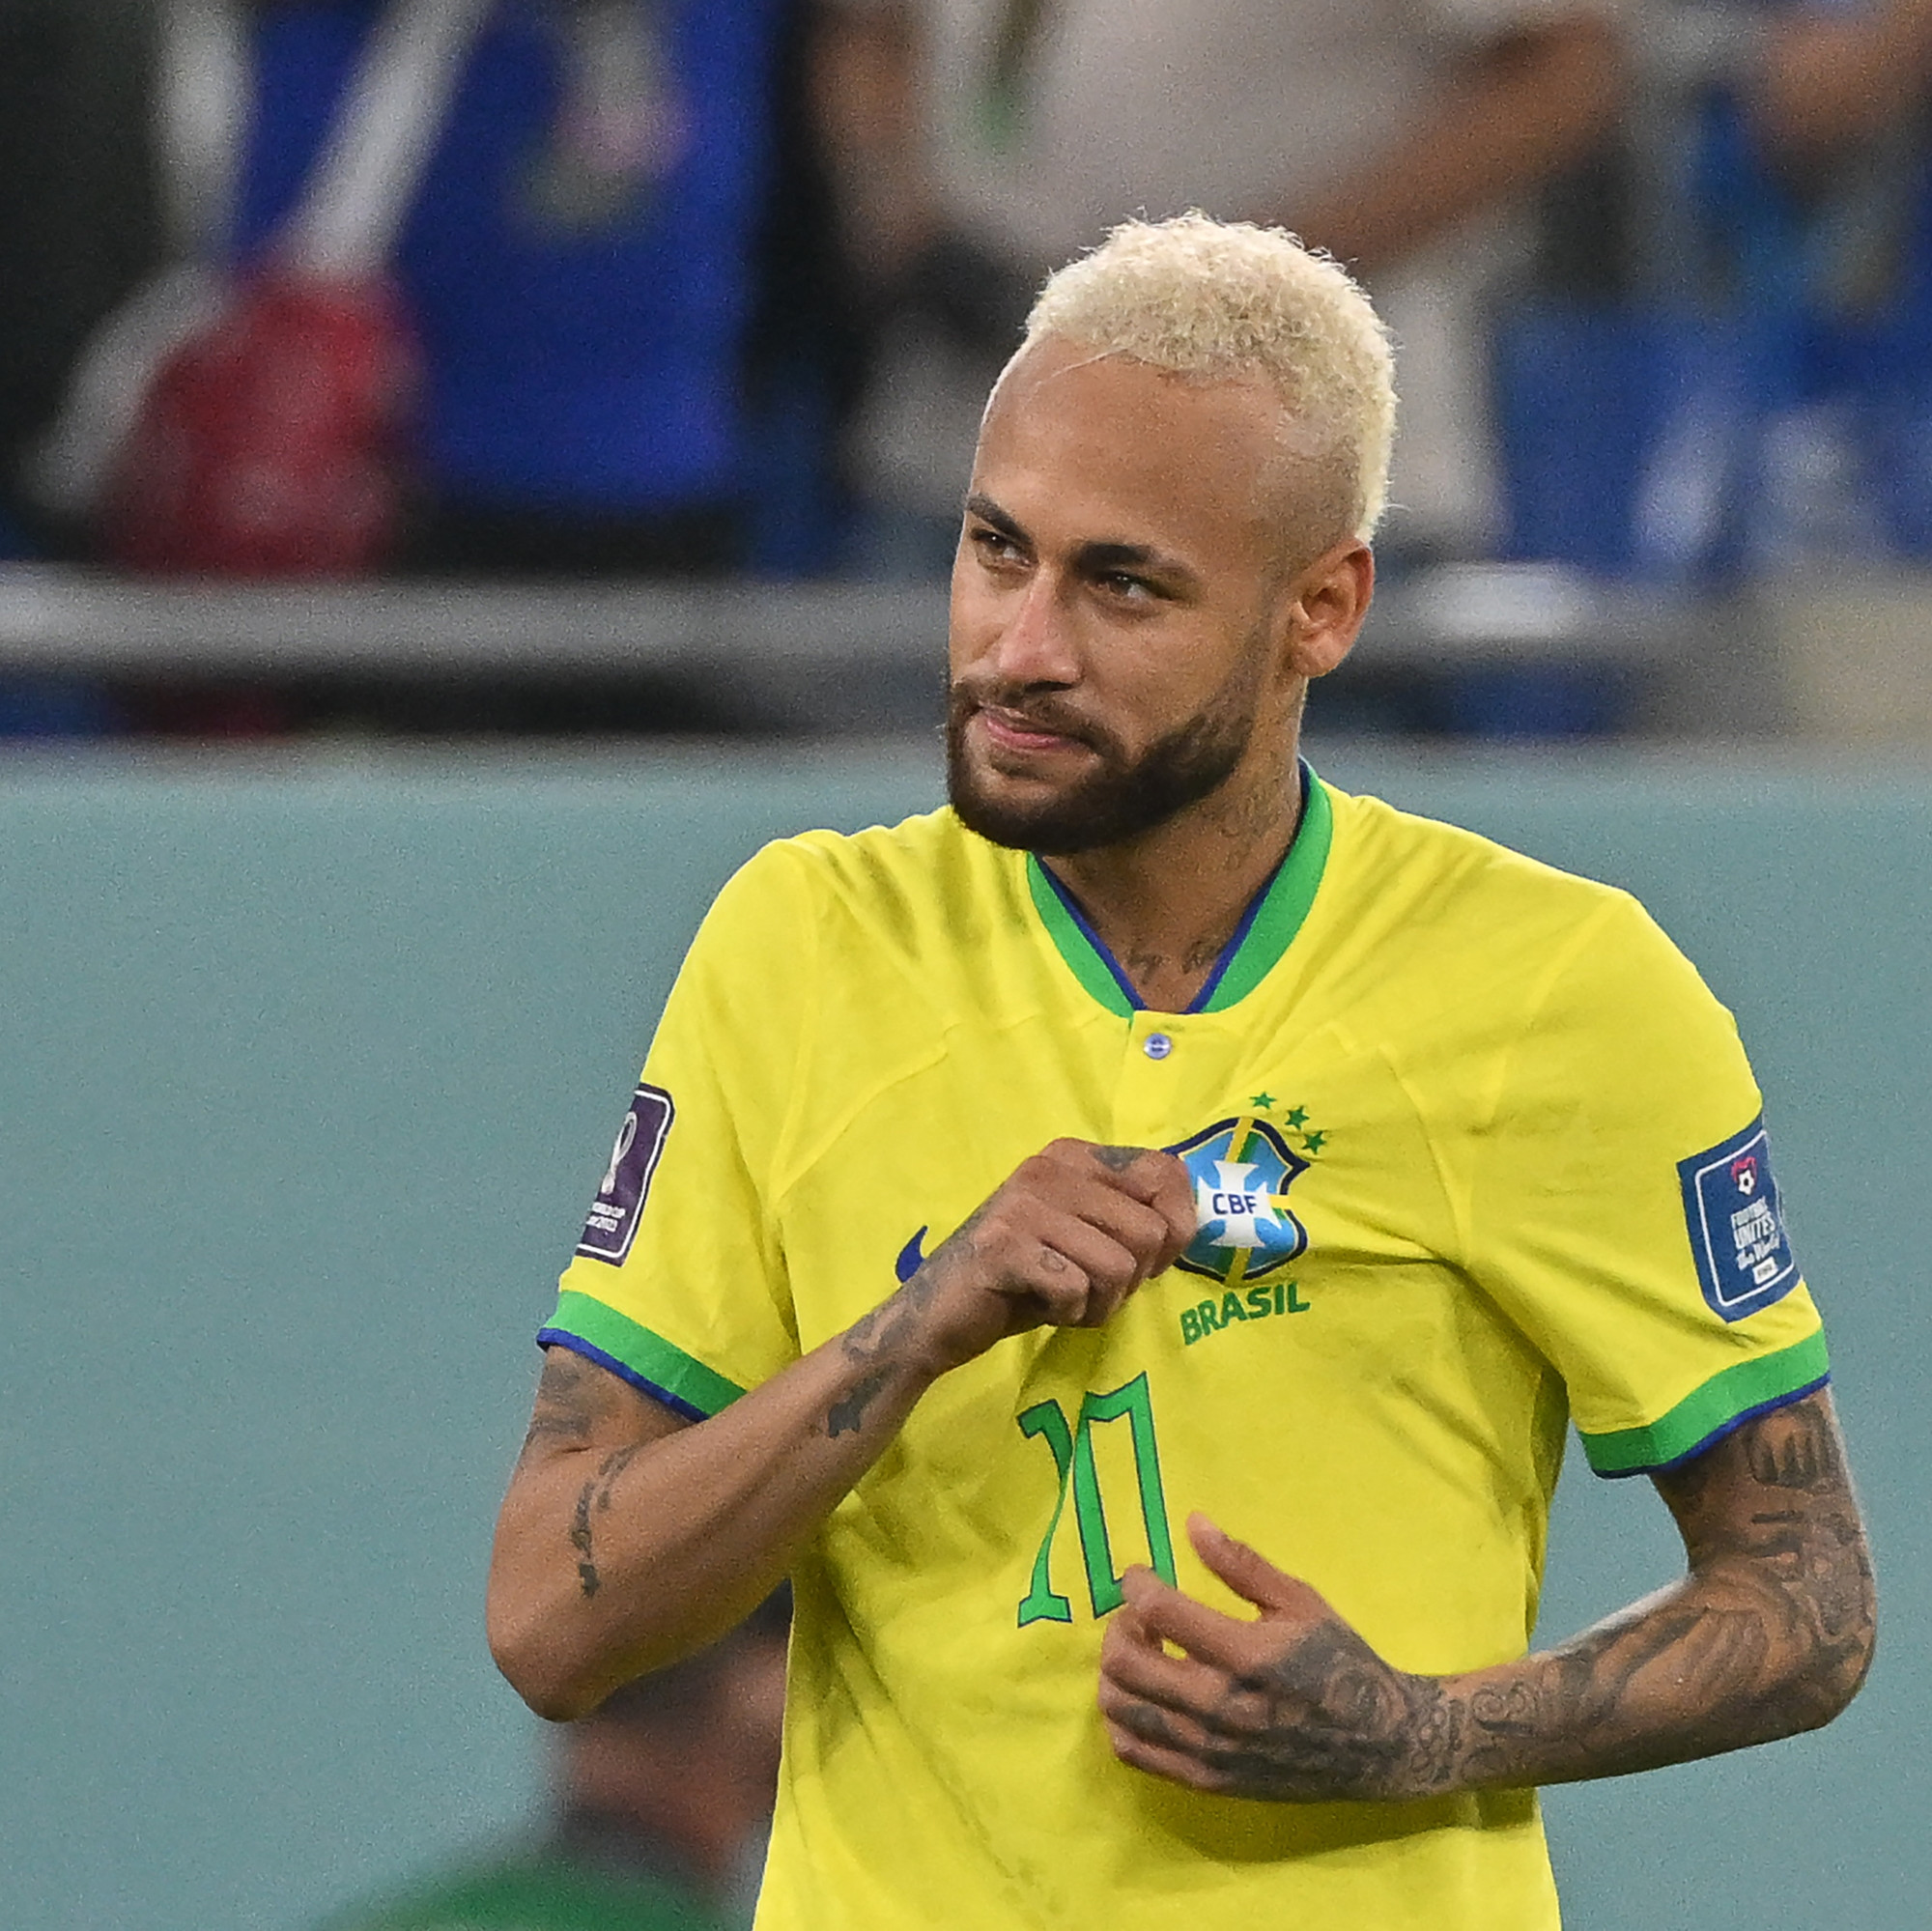 Brésil: Retraite internationale, Neymar fait une nouvelle révélation, « Ça sera m’a dernière compétition »